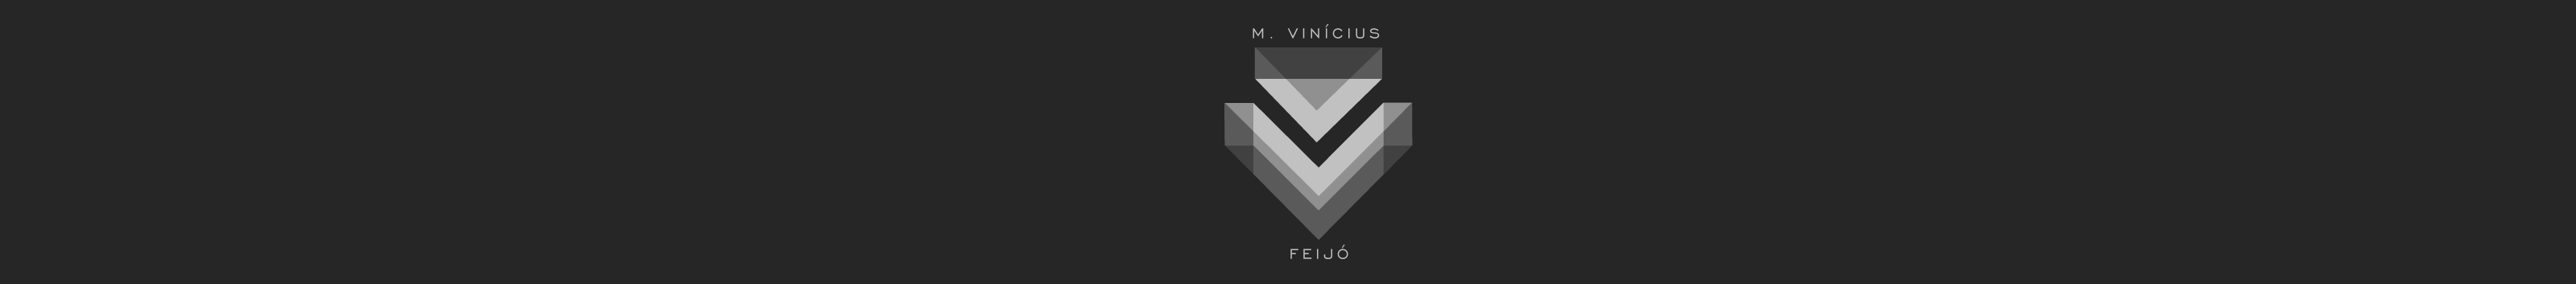 Banner de perfil de Marcos Vinícius Feijó